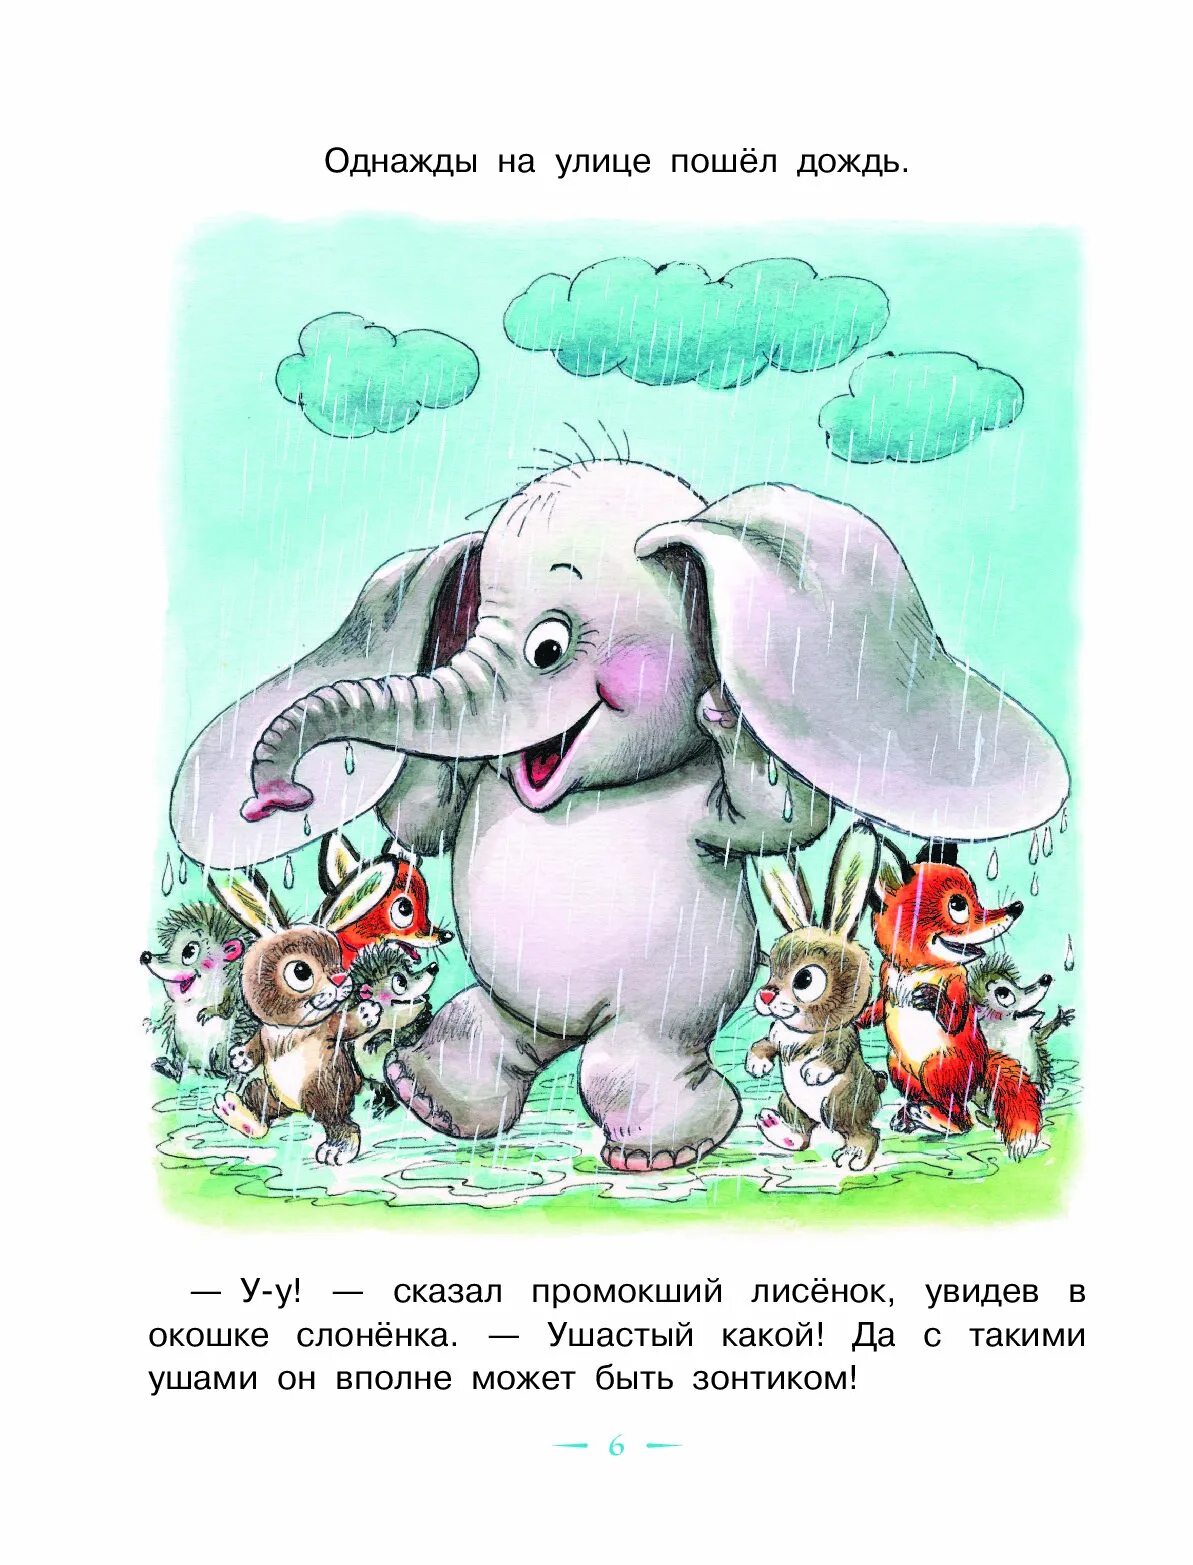 Слоник сказка. Г. Цыферова "жил на свете слонёнок". Жил на свете слонёнок — Цыферов г.м.